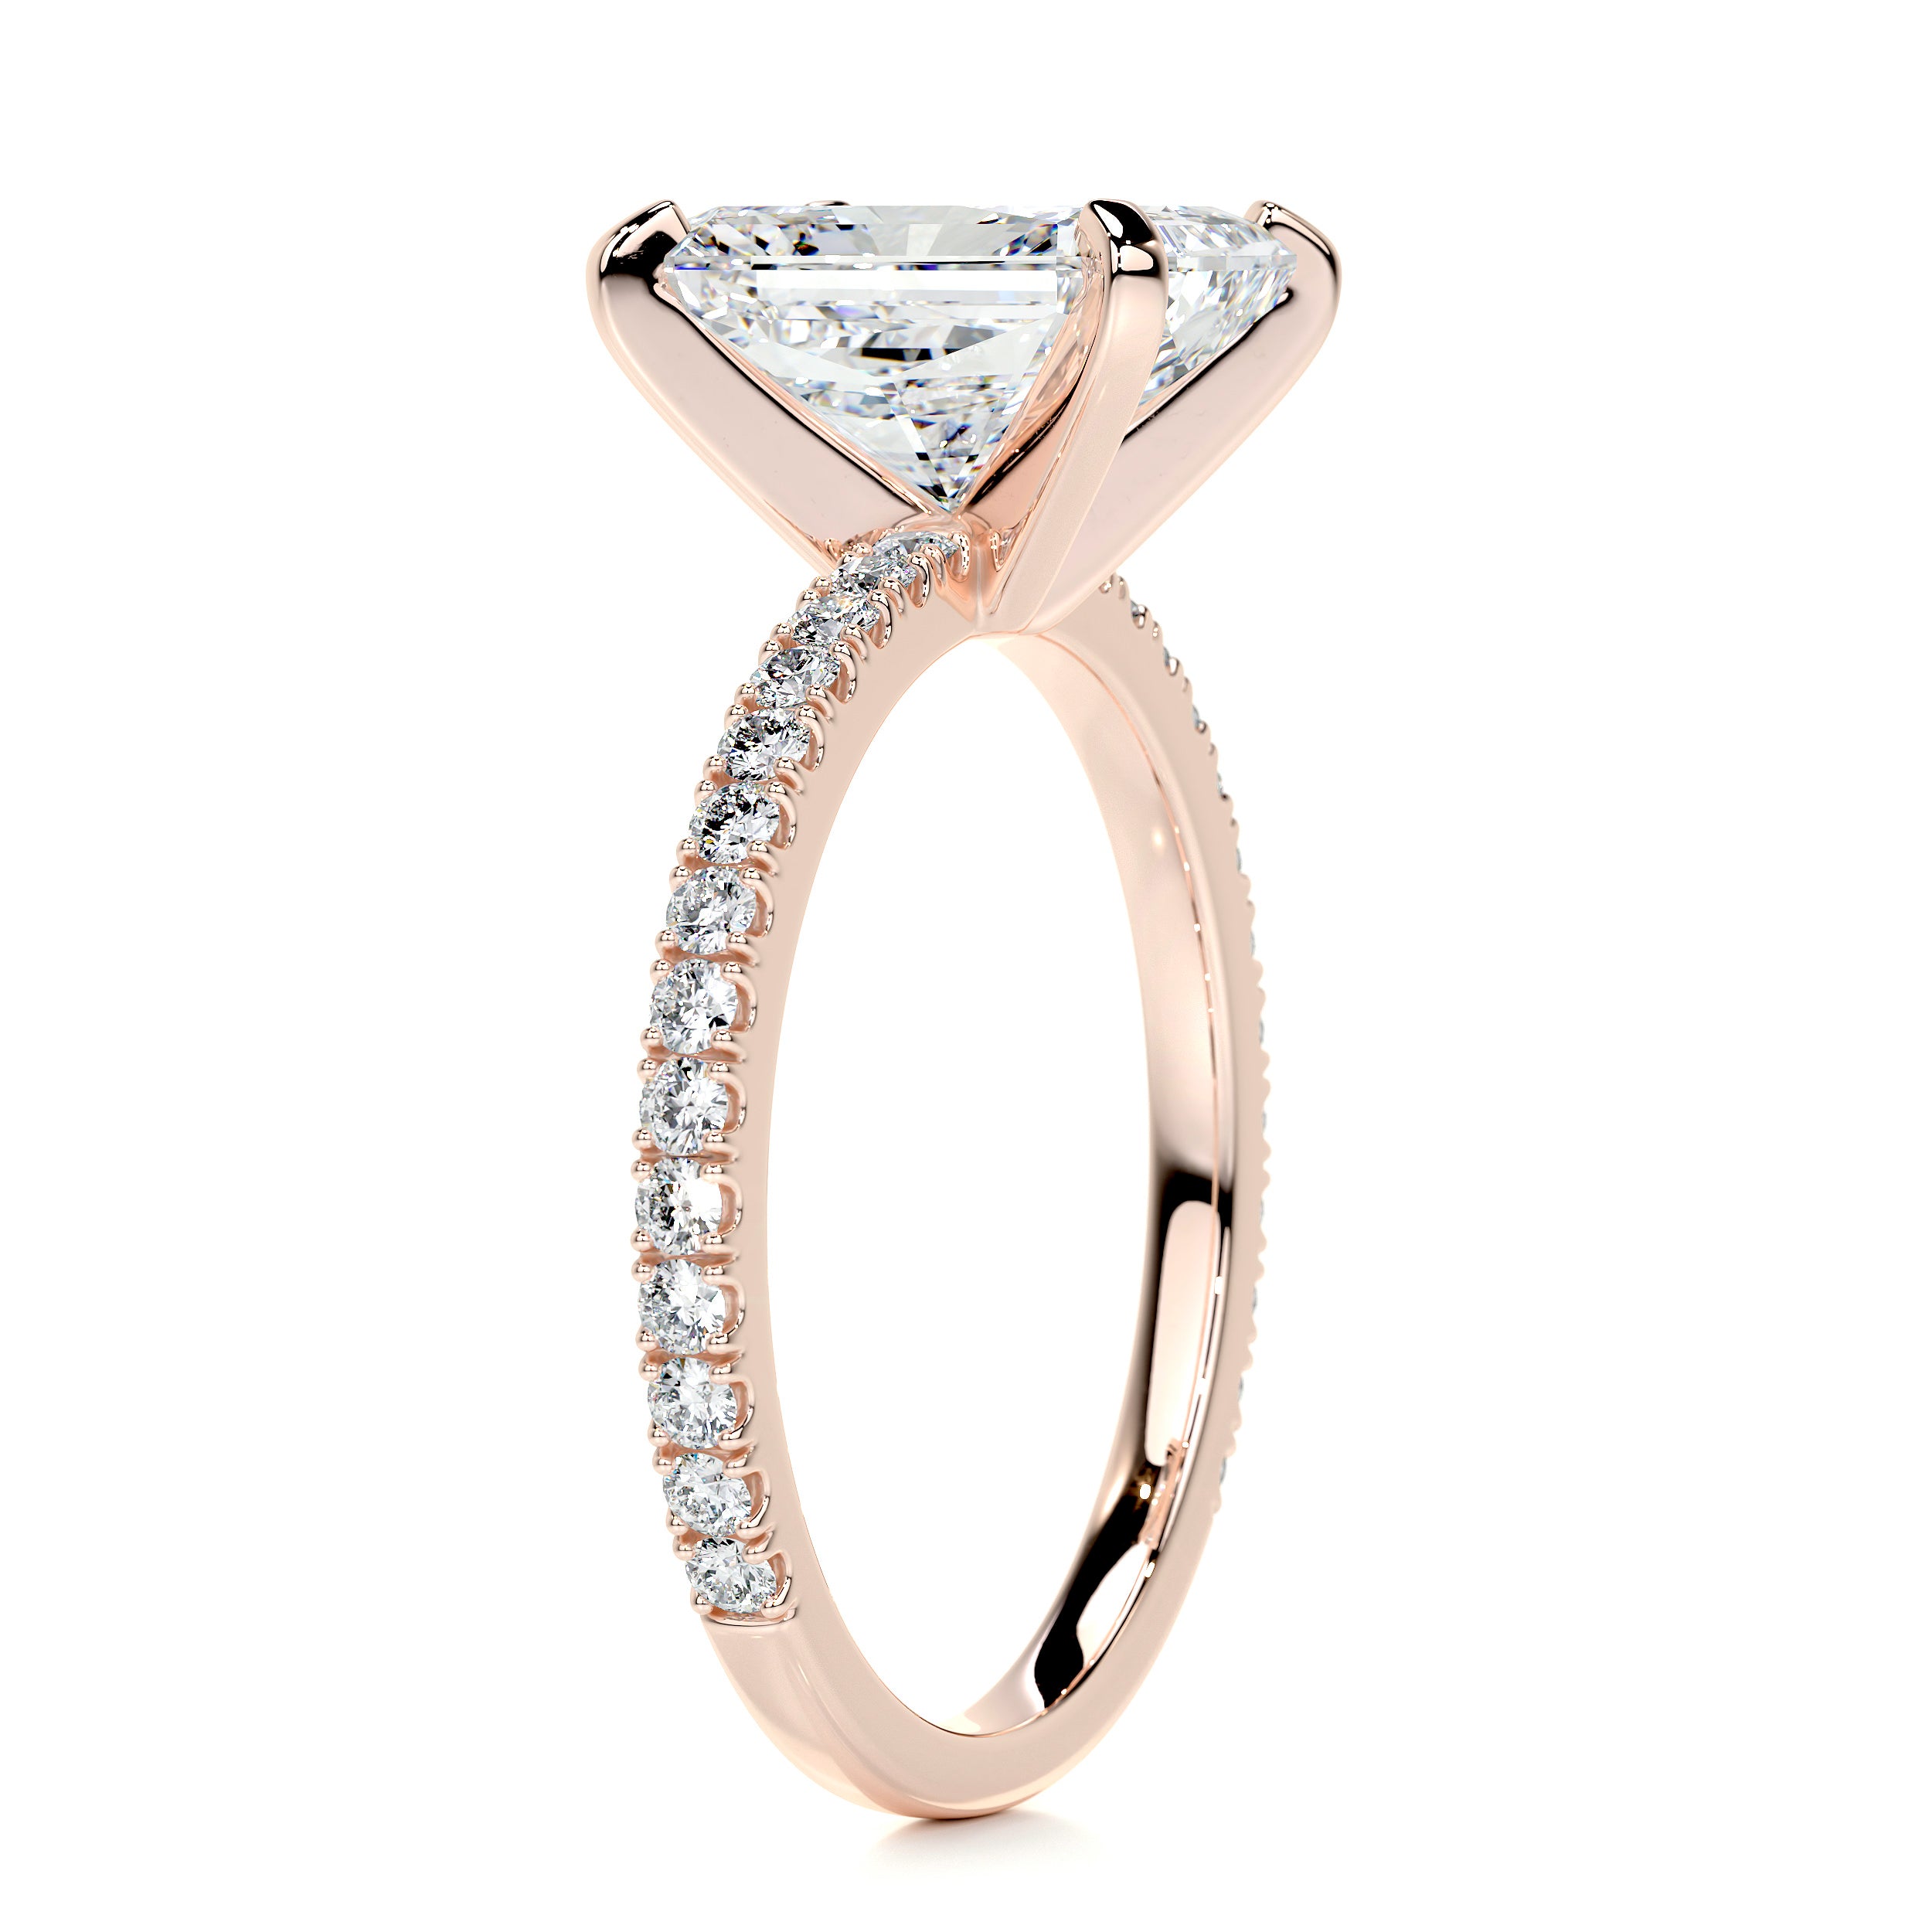 Audrey Diamond Engagement Ring   (3.30 Carat) -14K Rose Gold